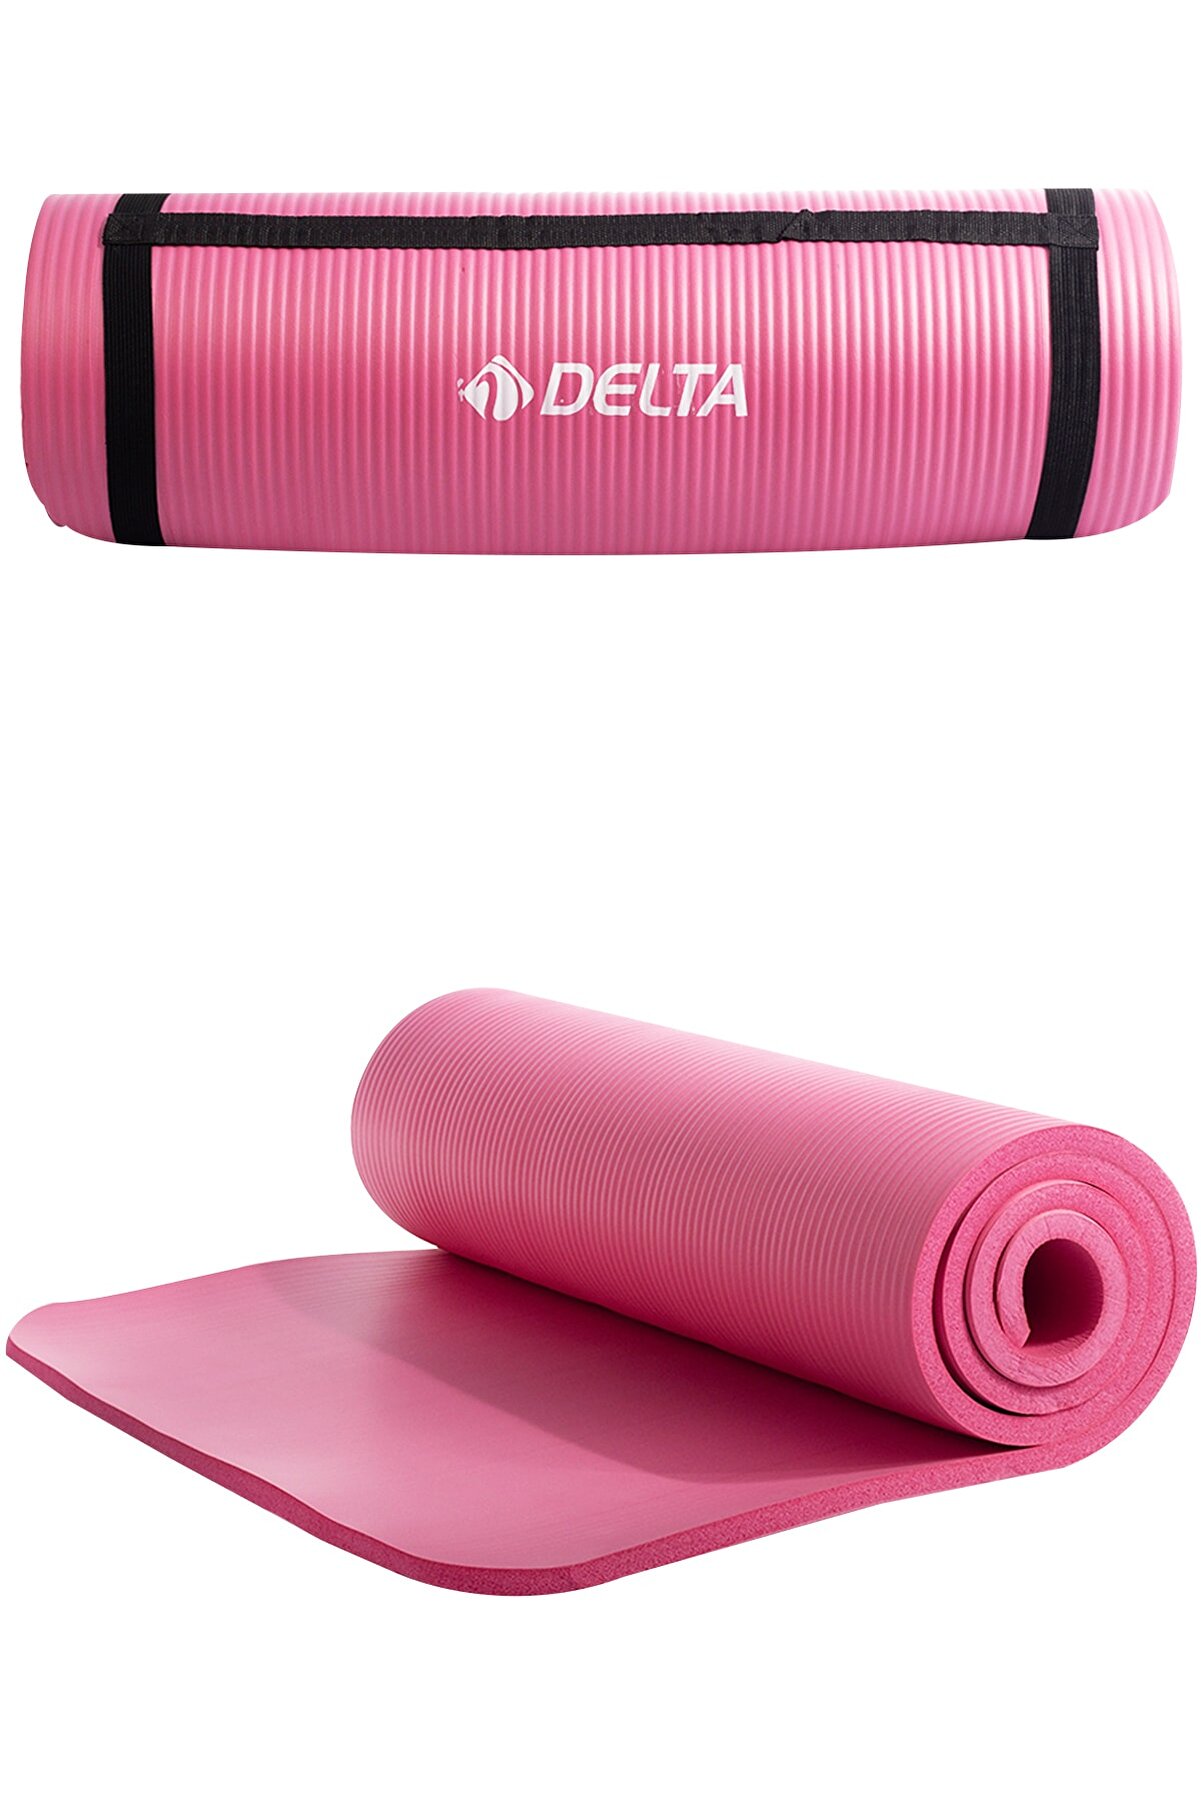 Delta Konfor Zemin 15 Mm Taşıma Askılı Pilates Minderi Yoga Matı